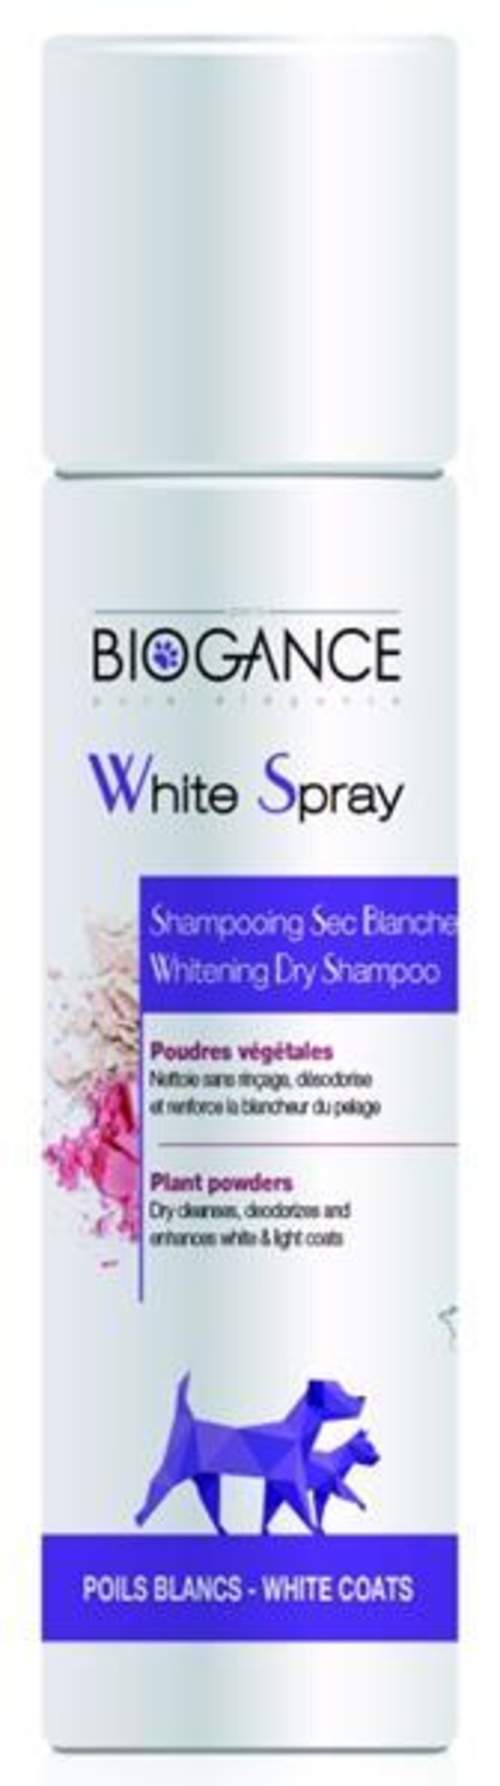 Biogance White spray